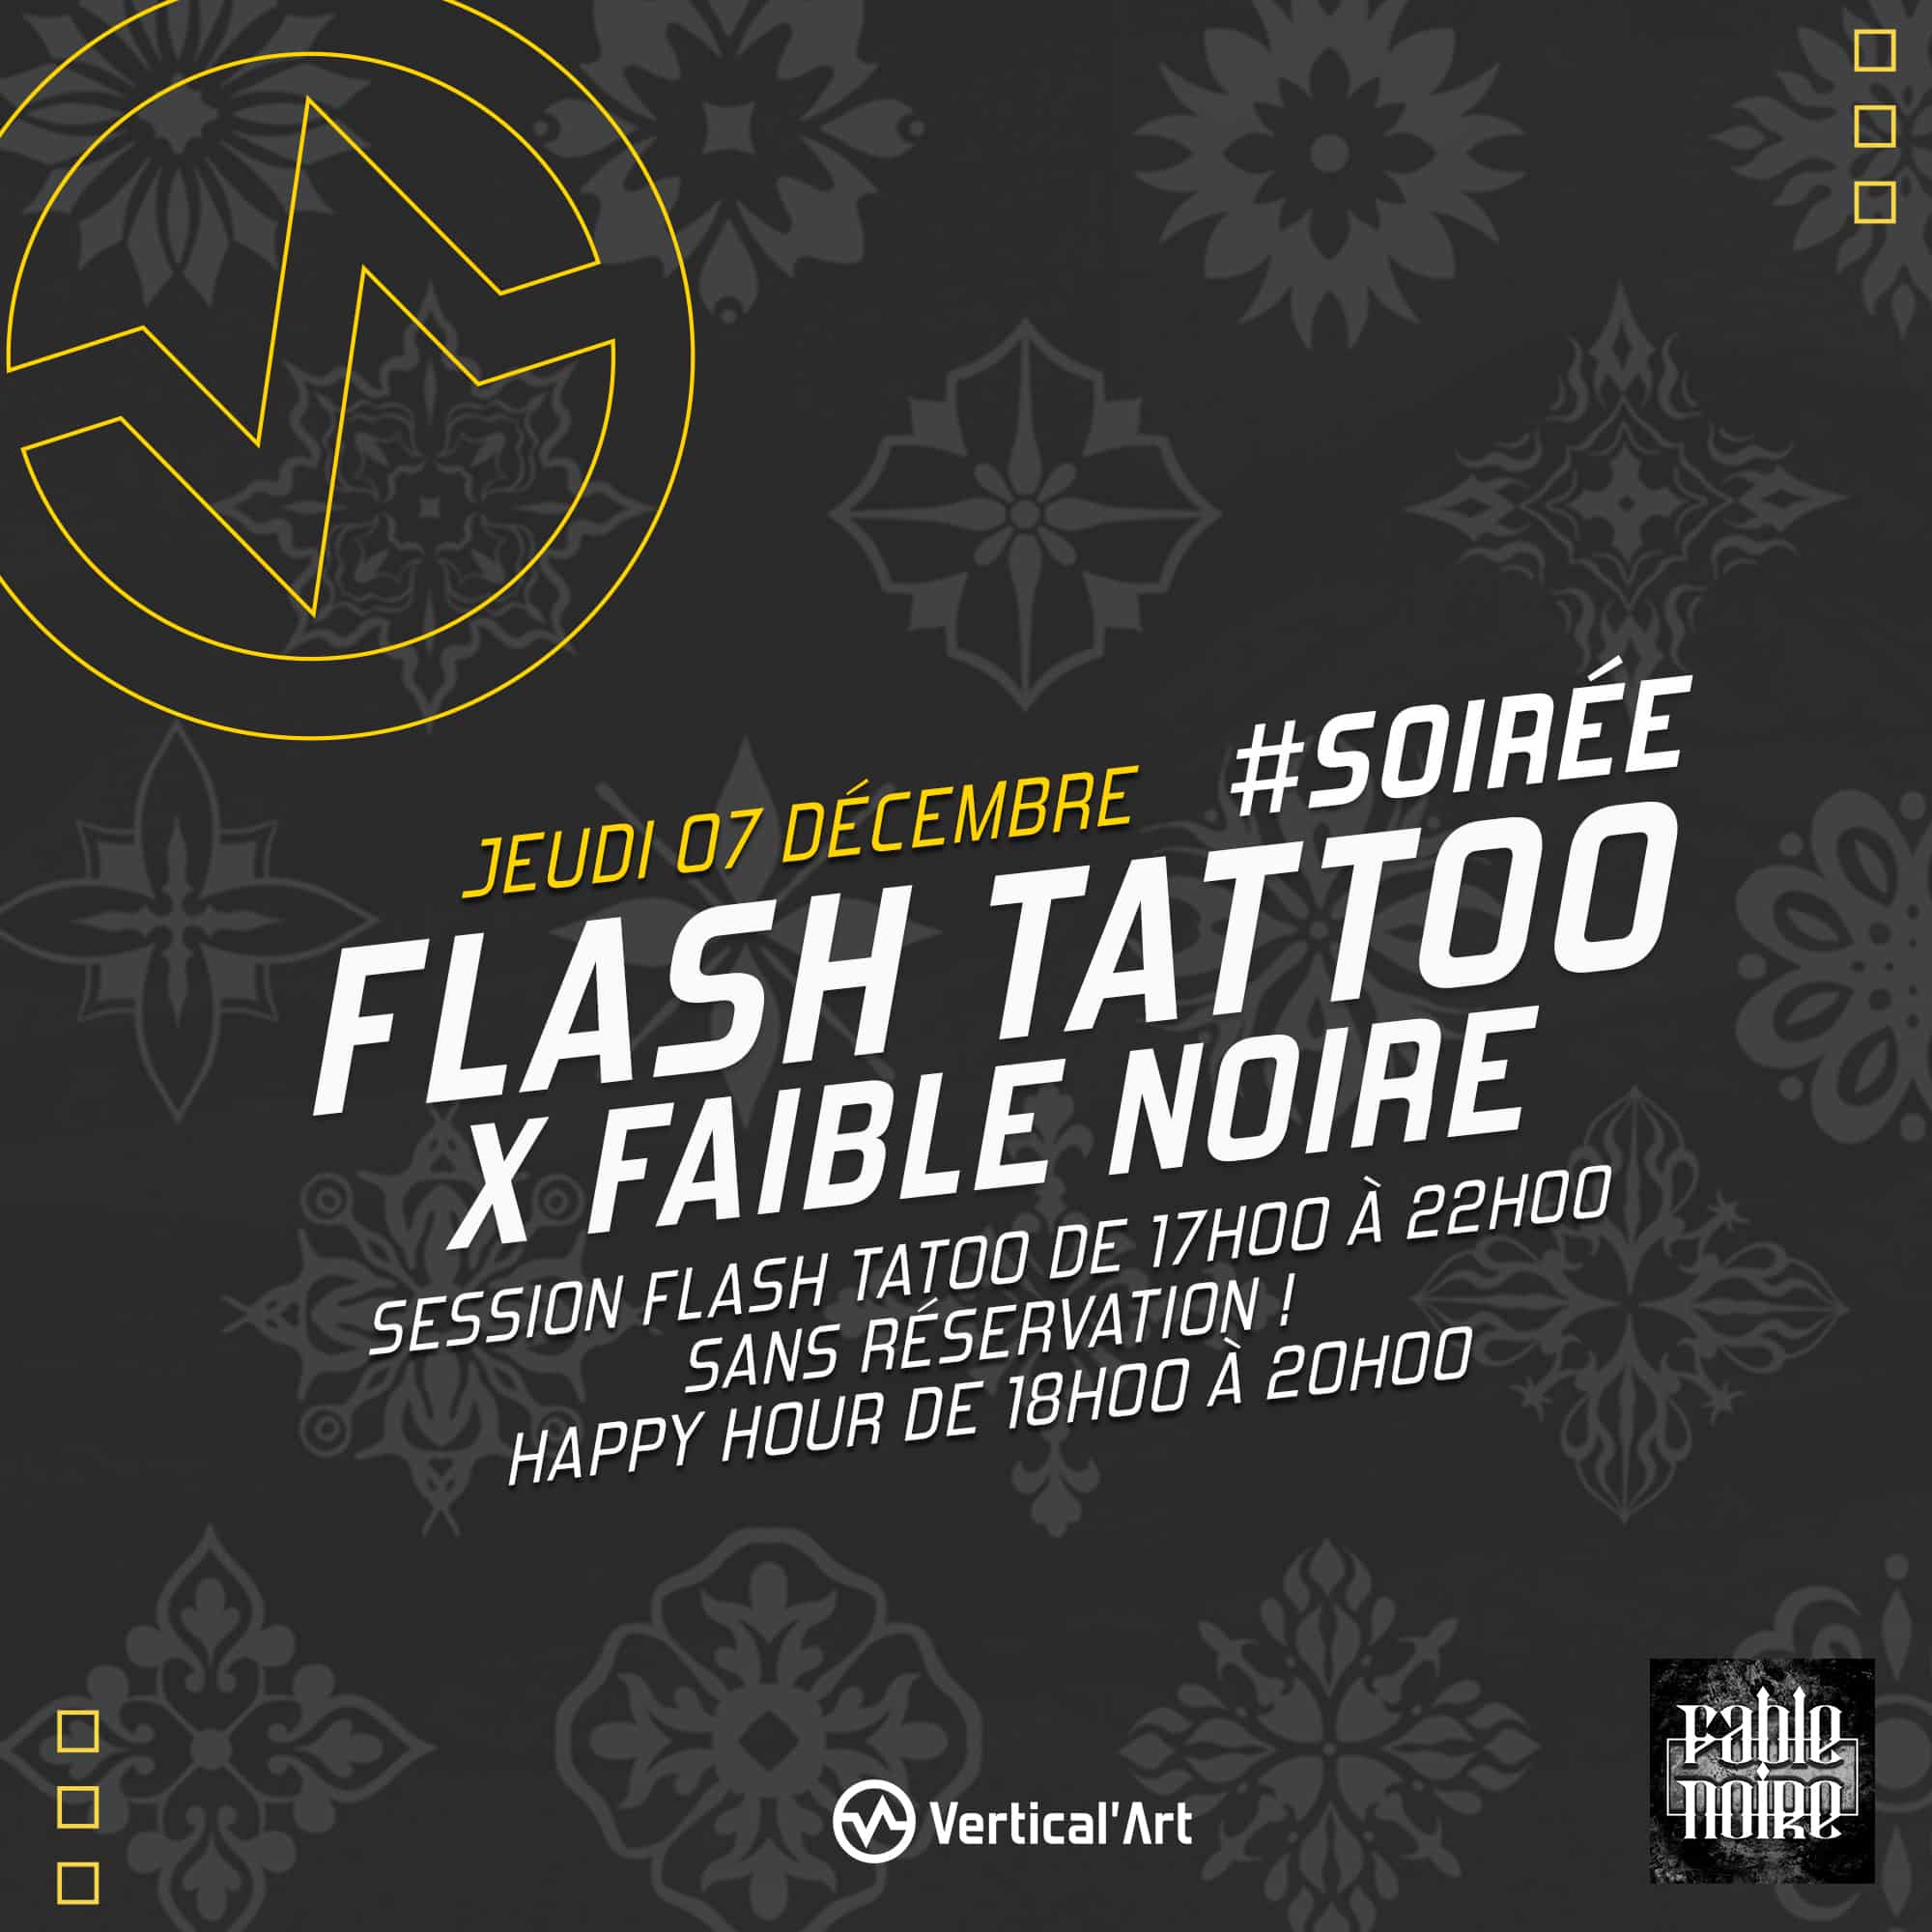 Soirée Flash tattoo à Vertical'Art Le Mans X Fable Noire jeudi 7 décembre